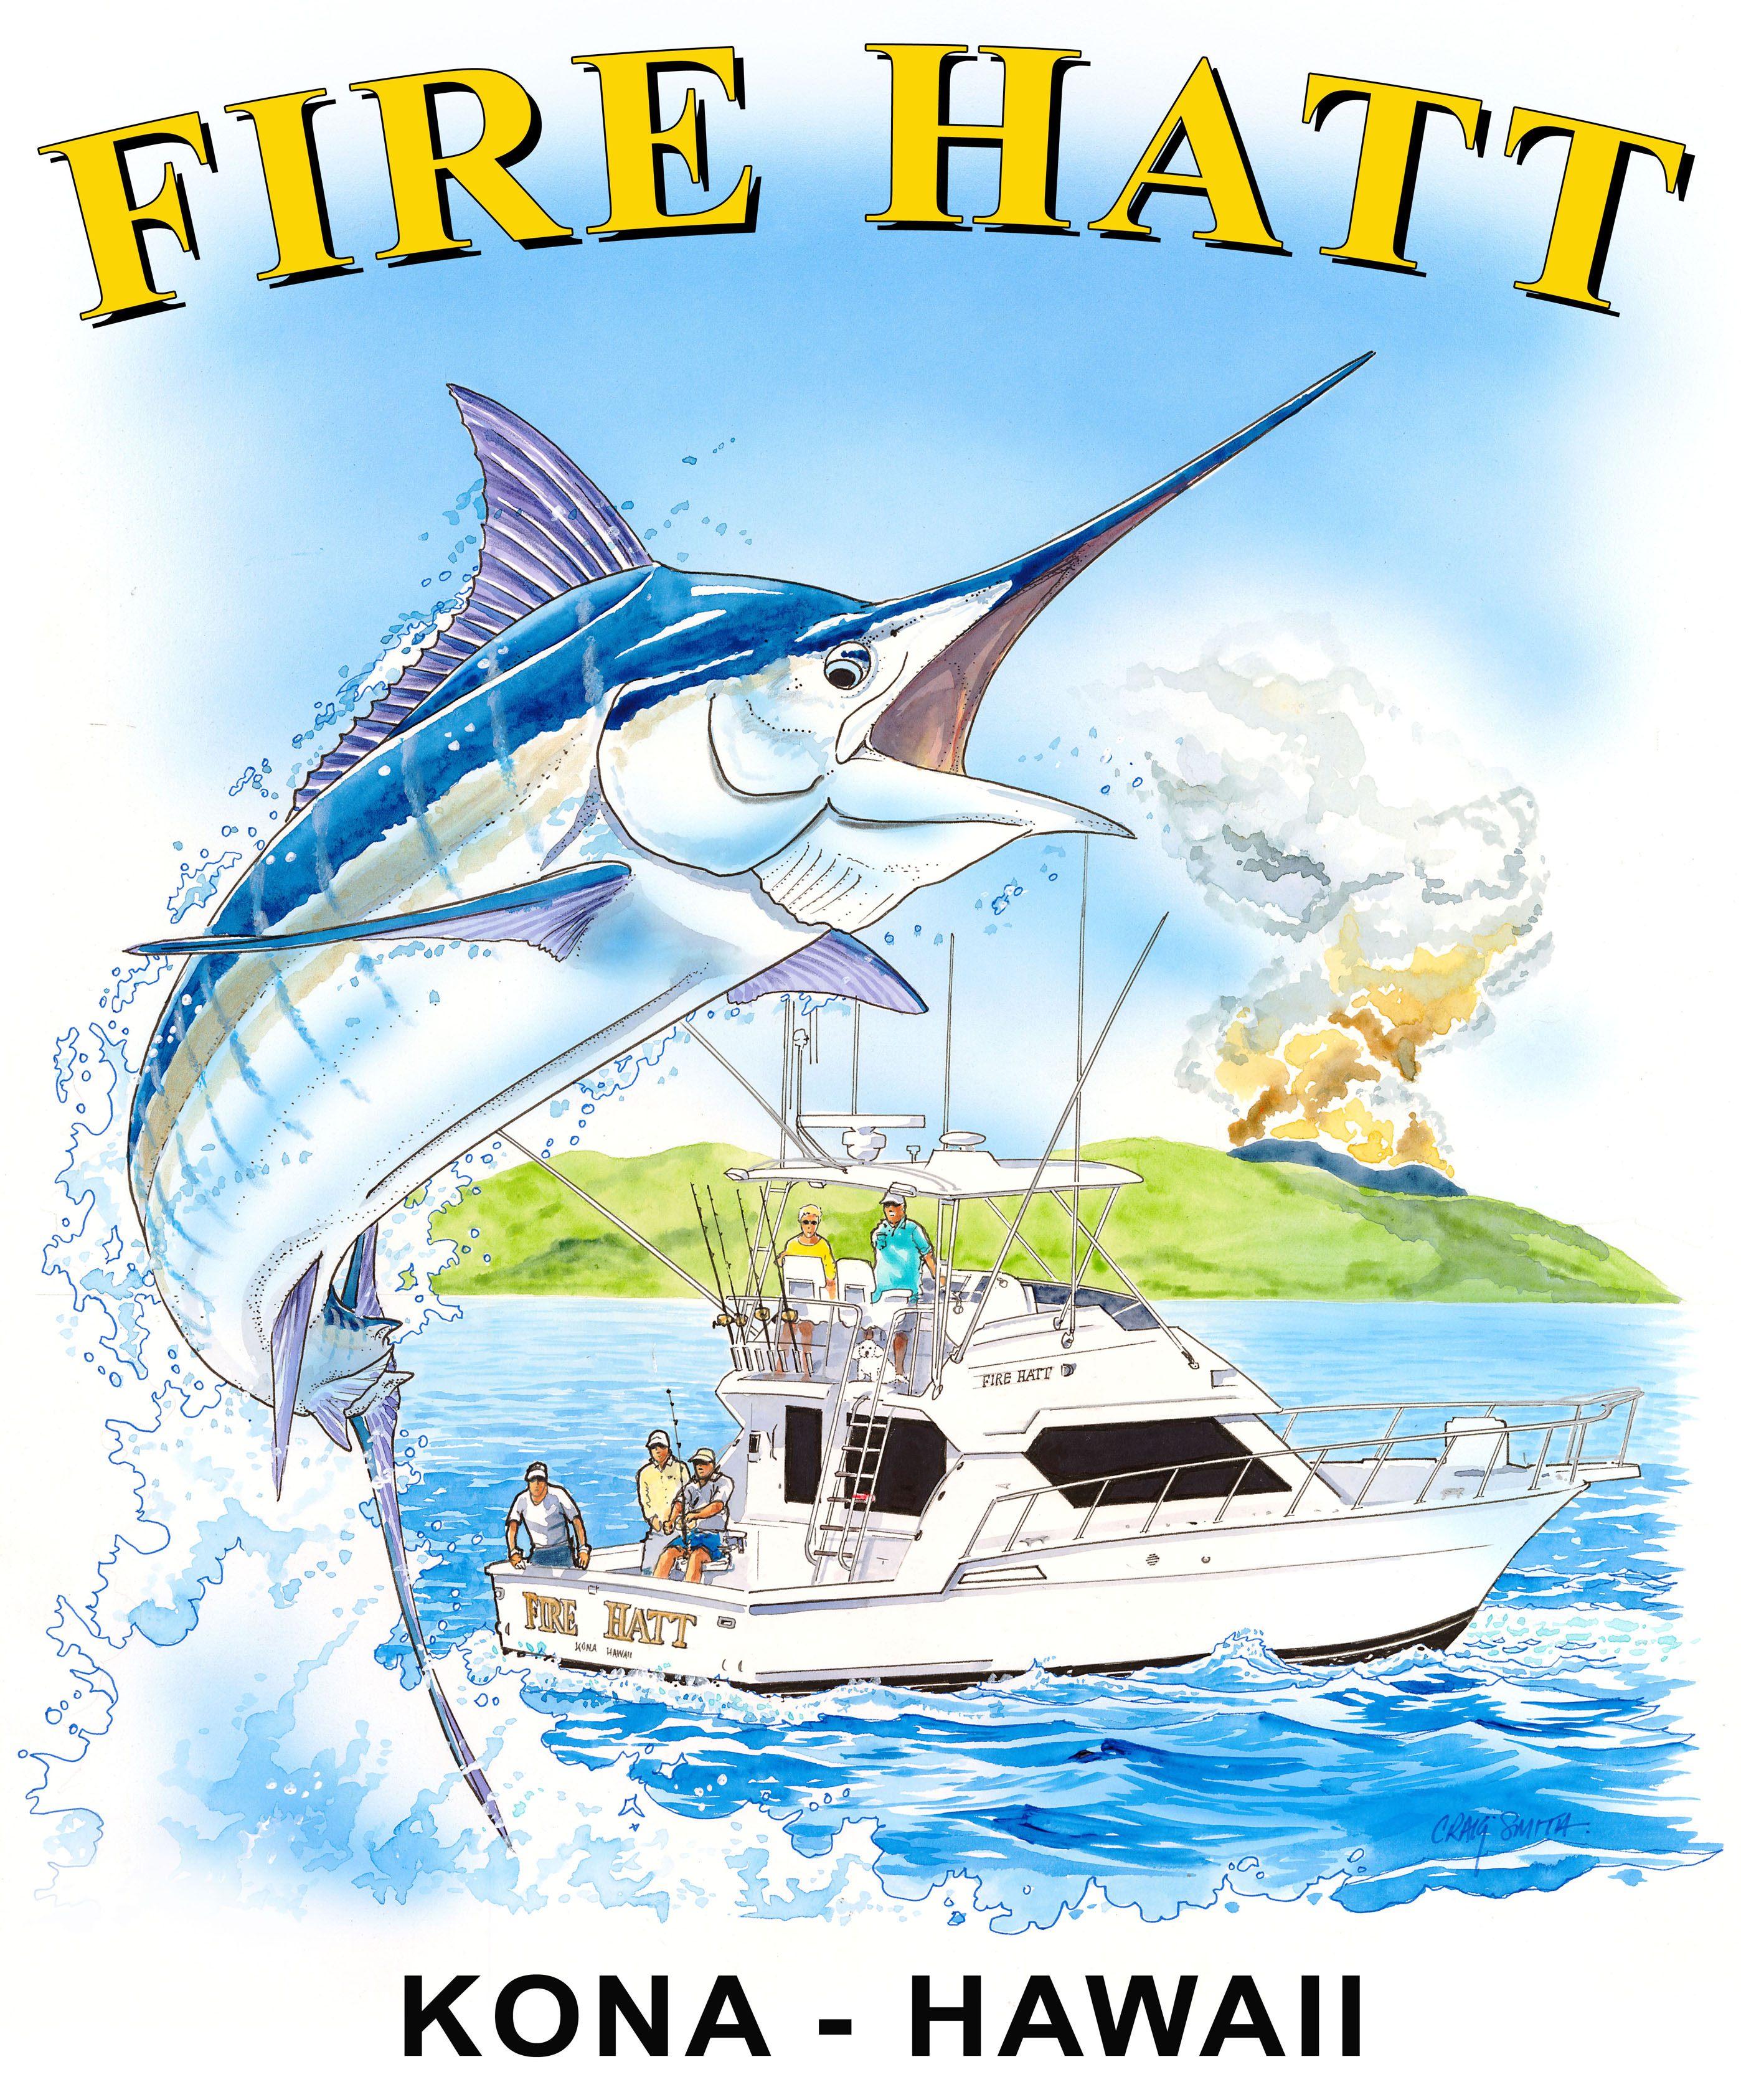 Craig Smith Art featured on Fire Hatt Sportfishing Tee Shirts